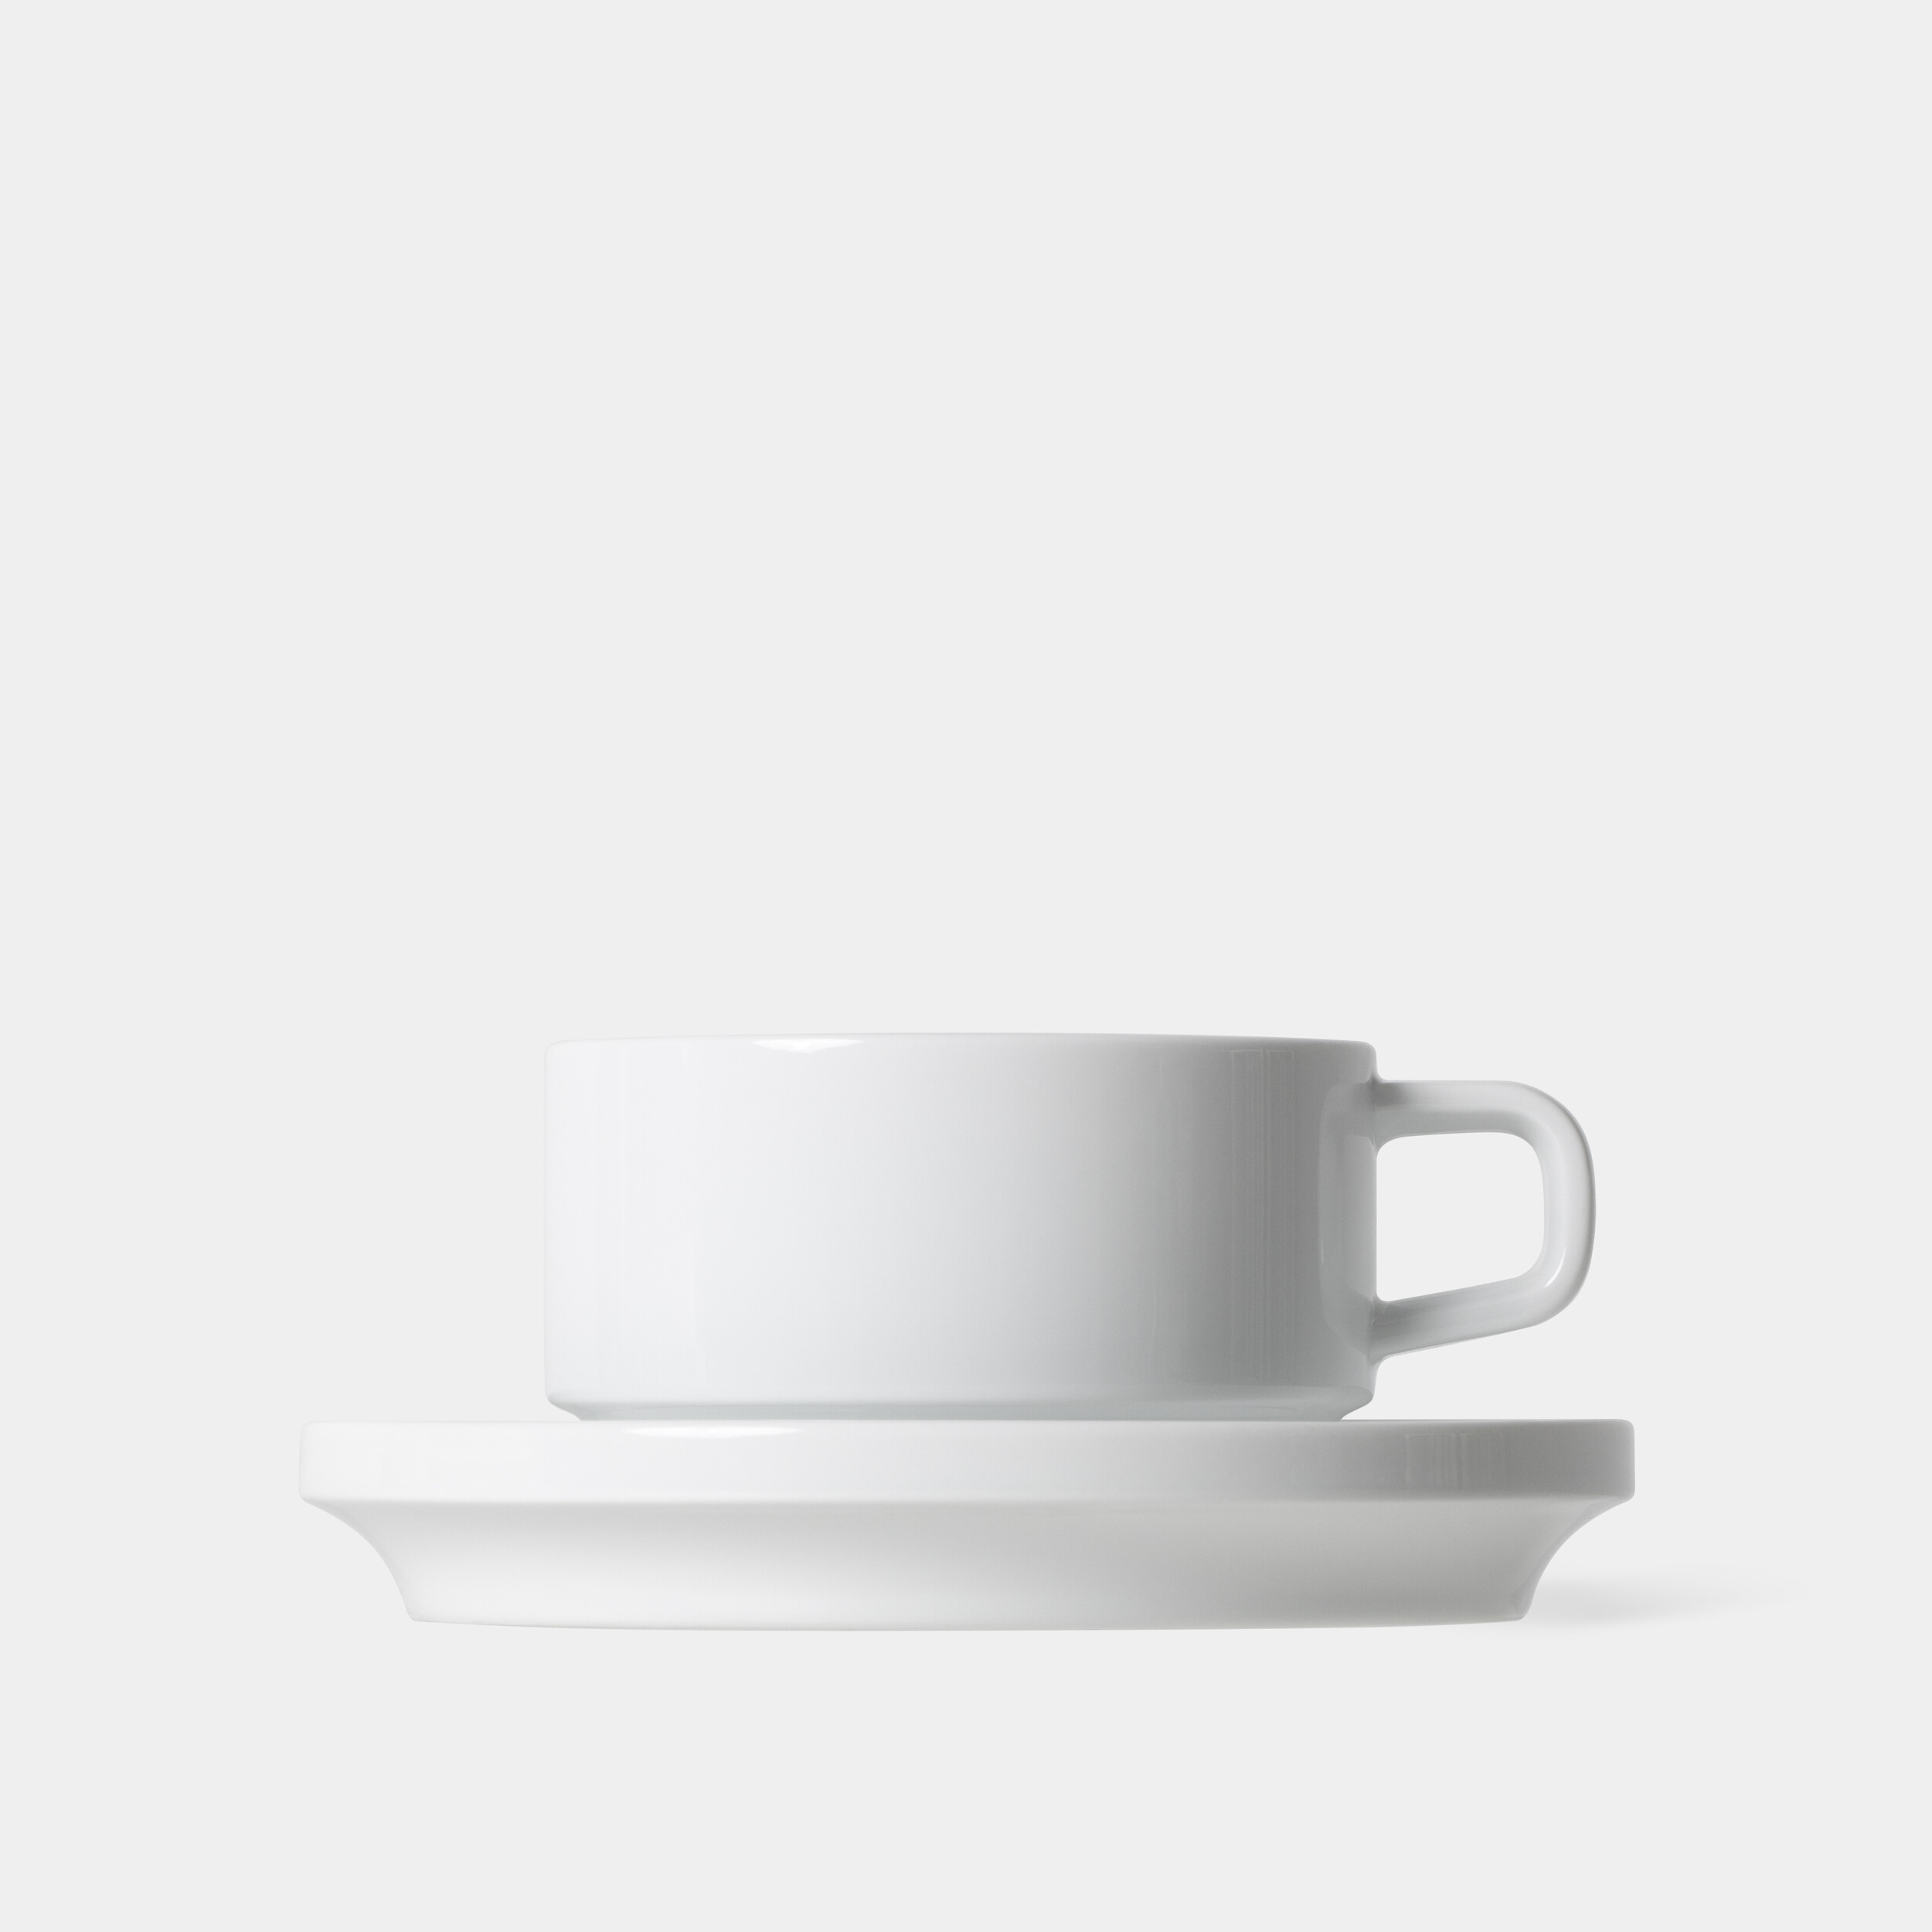 카페라떼 컵 앤 소서 / Cafe Latte Cup and Saucer / 270ml, 9oz